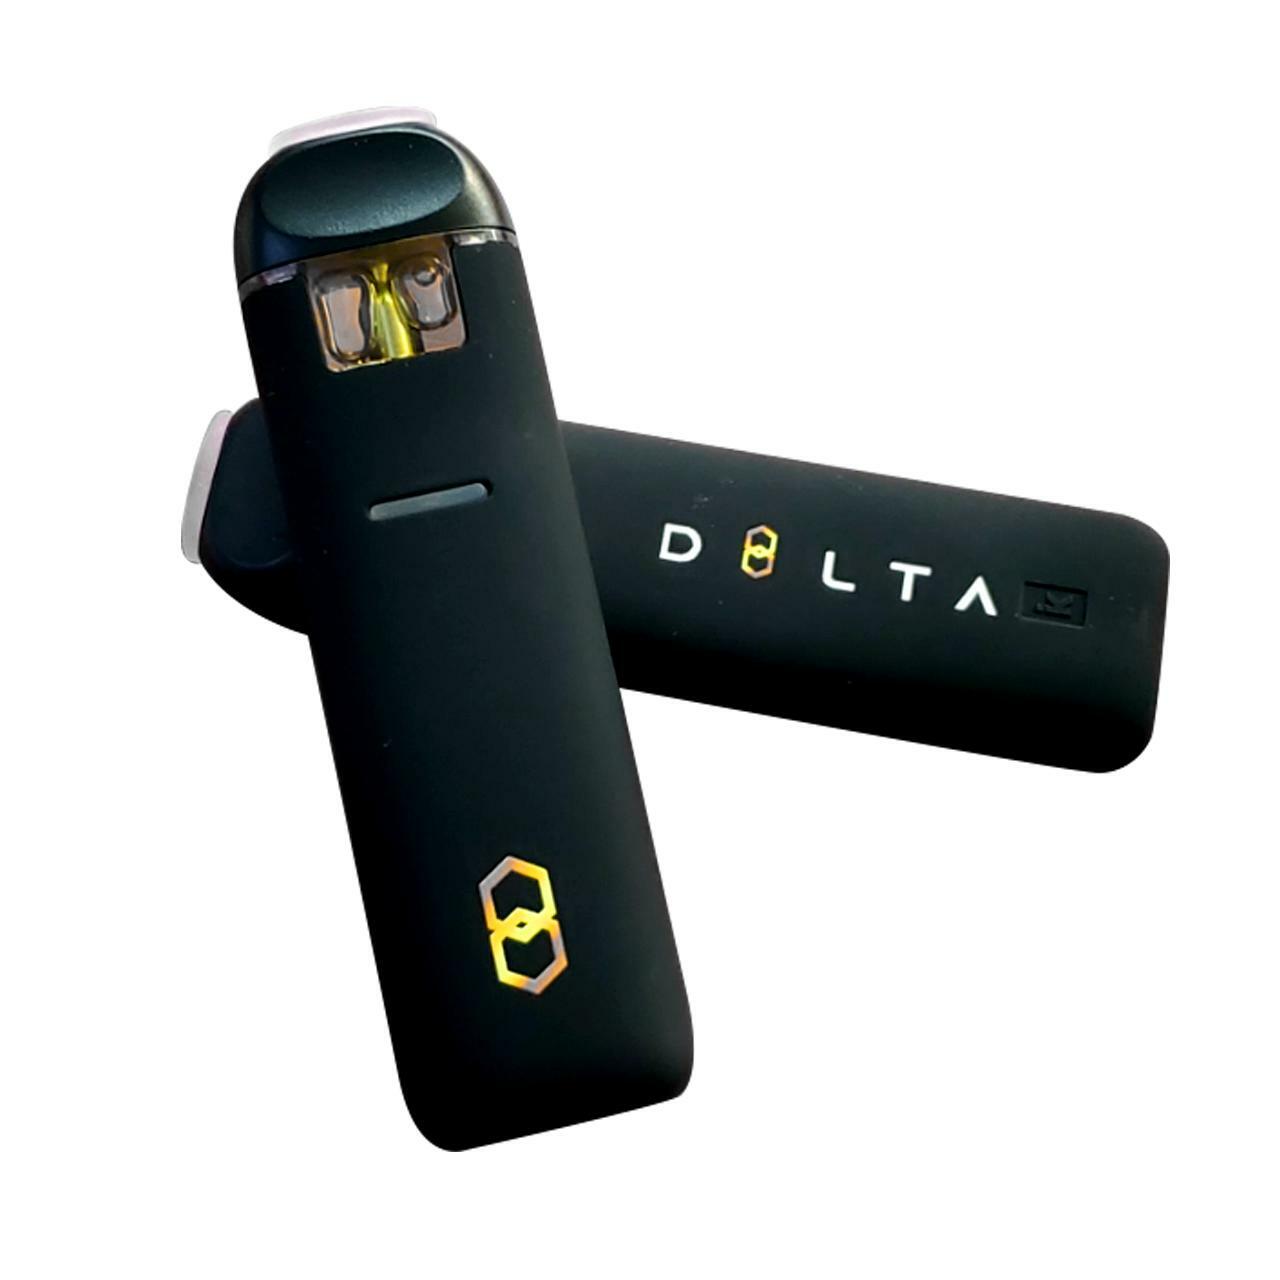 d8lta delta-8 vape pen disposable d8 thc flavored vape pens 500mg